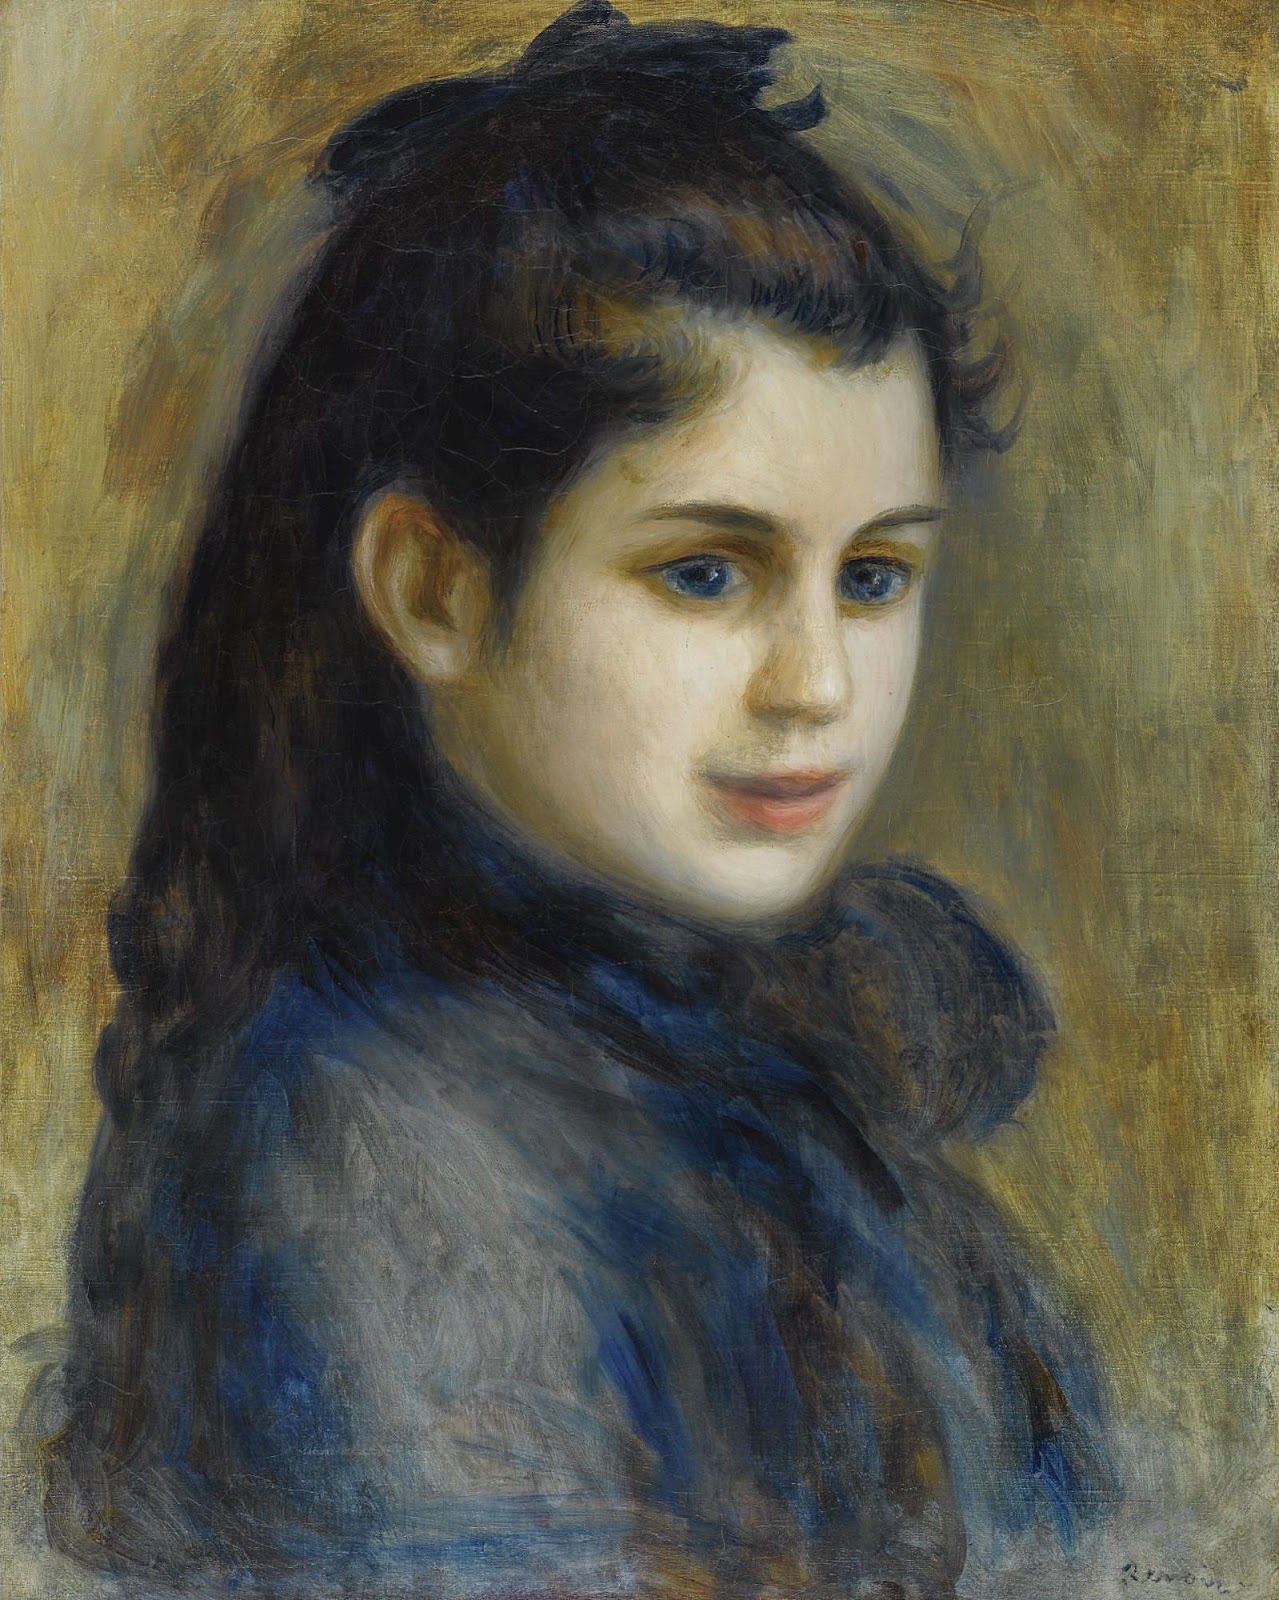 Pierre+Auguste+Renoir-1841-1-19 (877).jpg